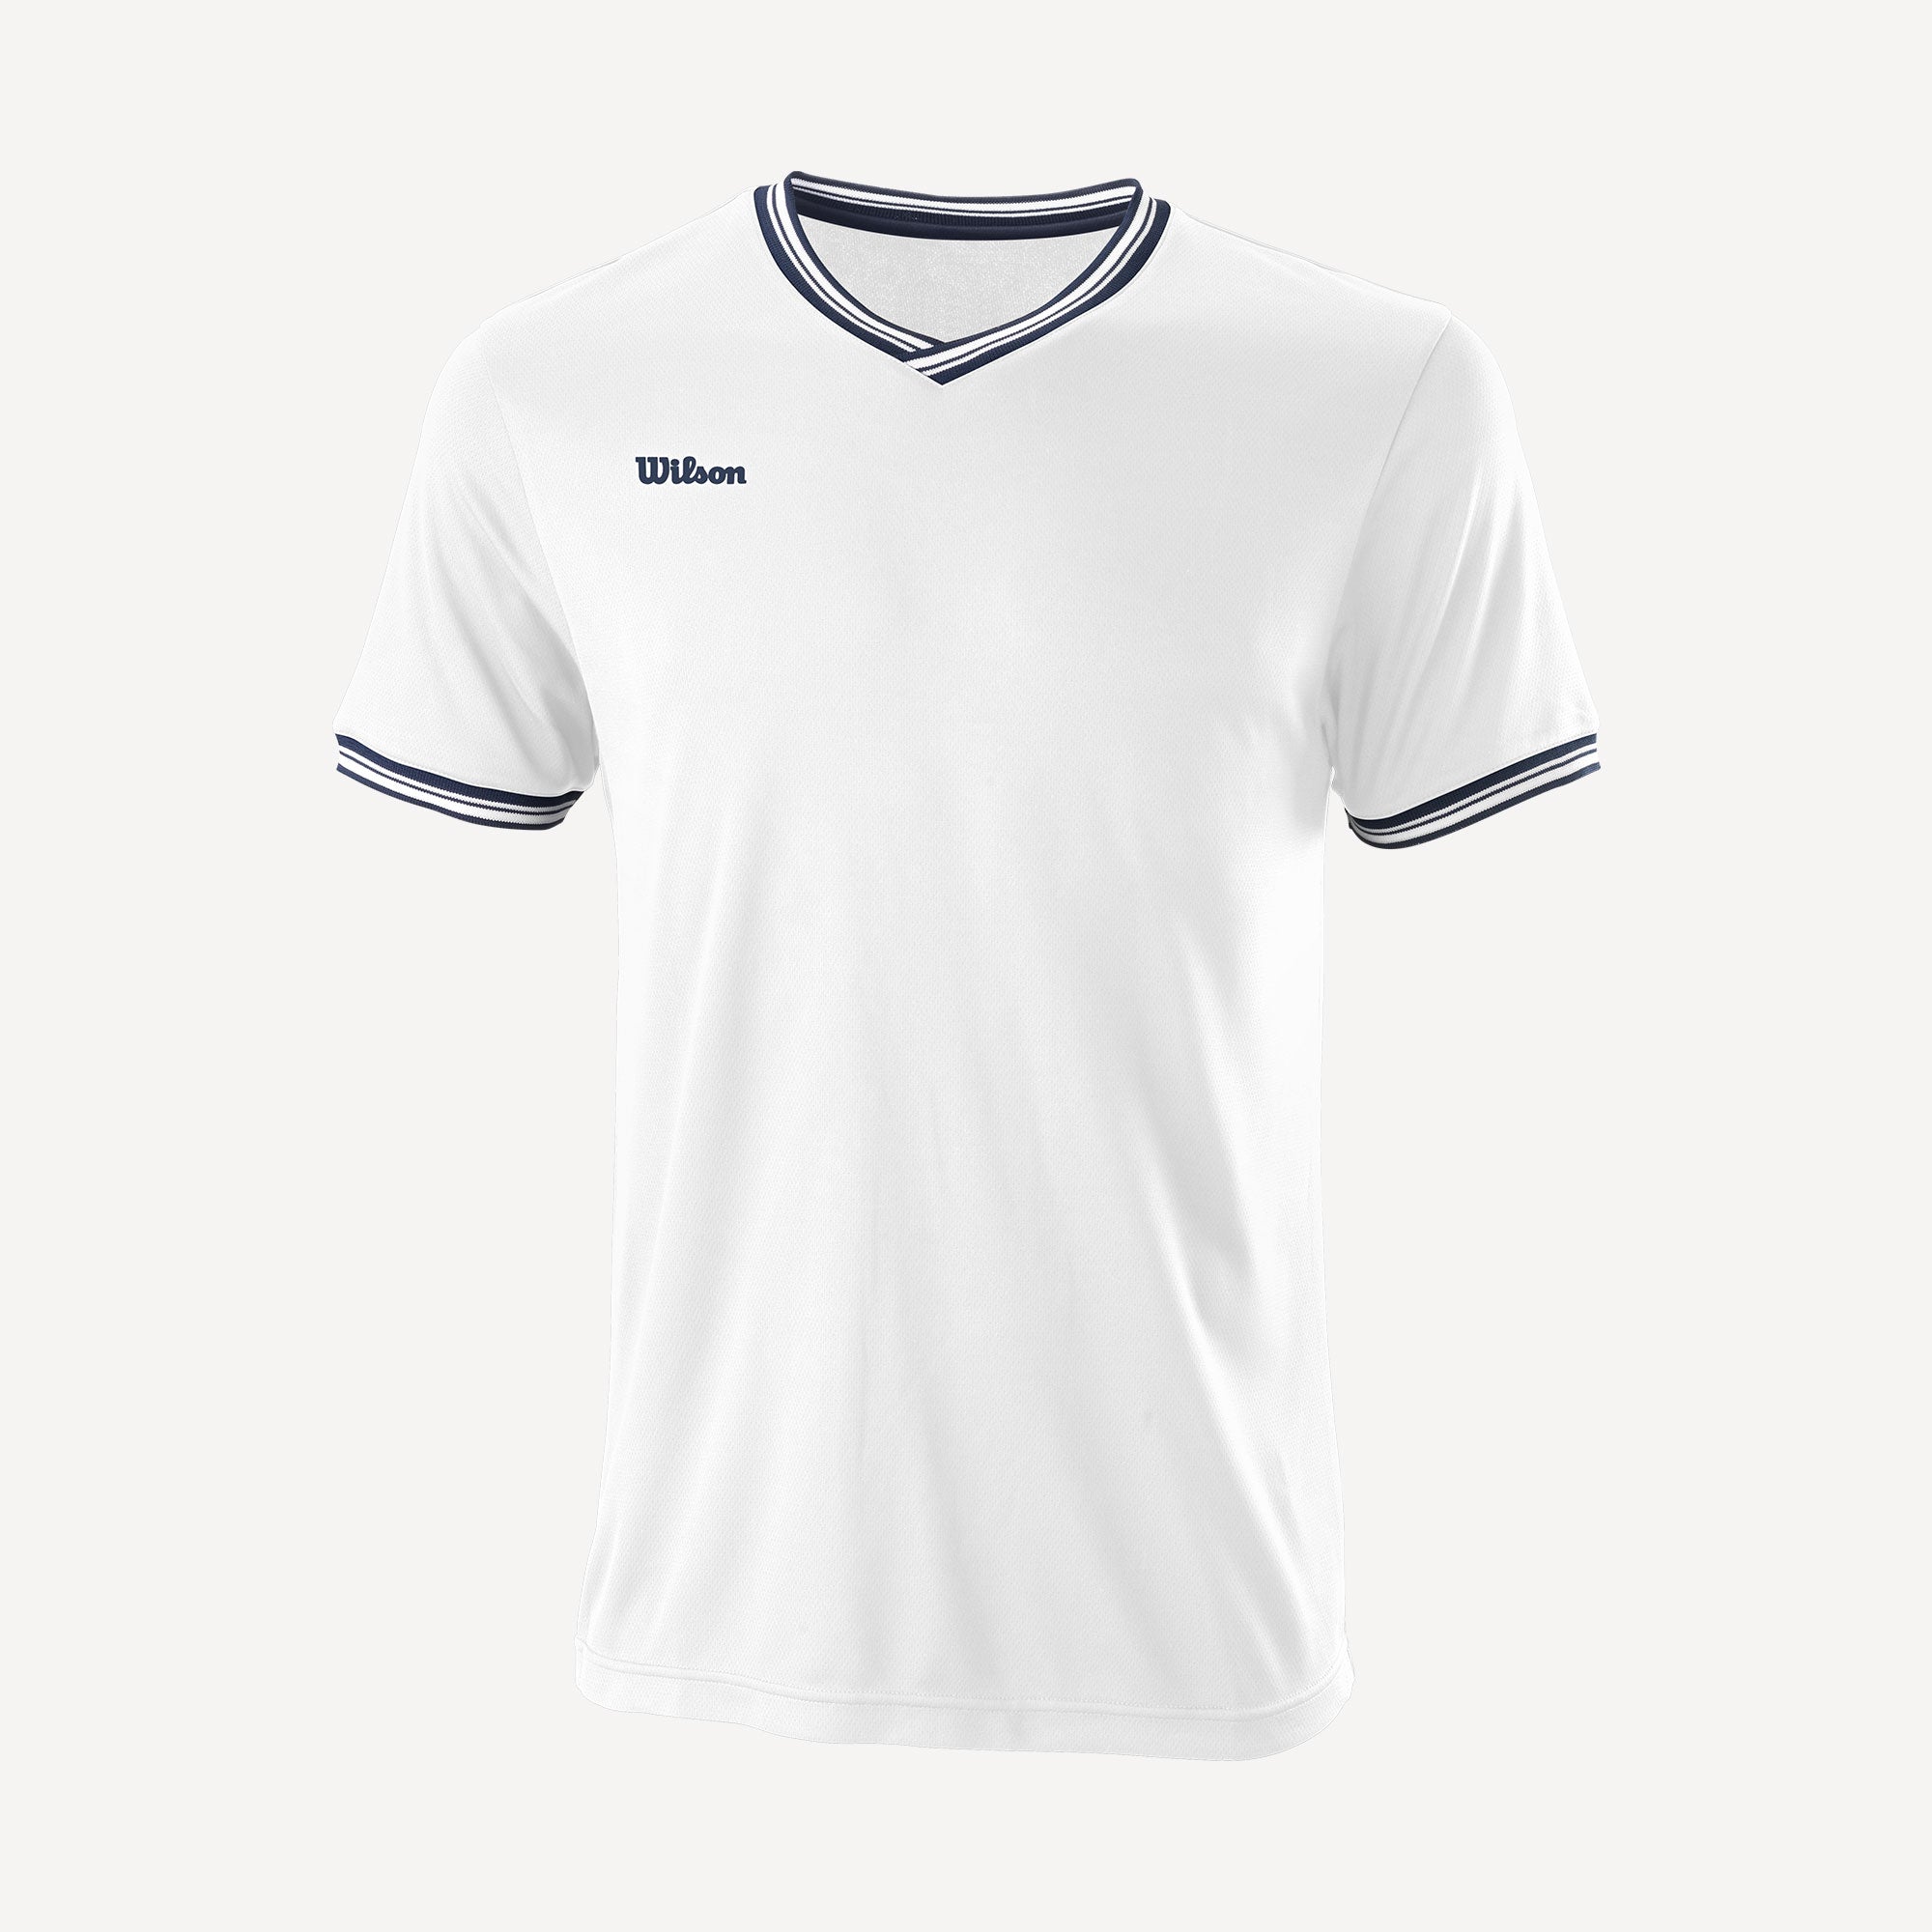 Wilson Team 2 Men's V-Neck Tennis Shirt White (1)